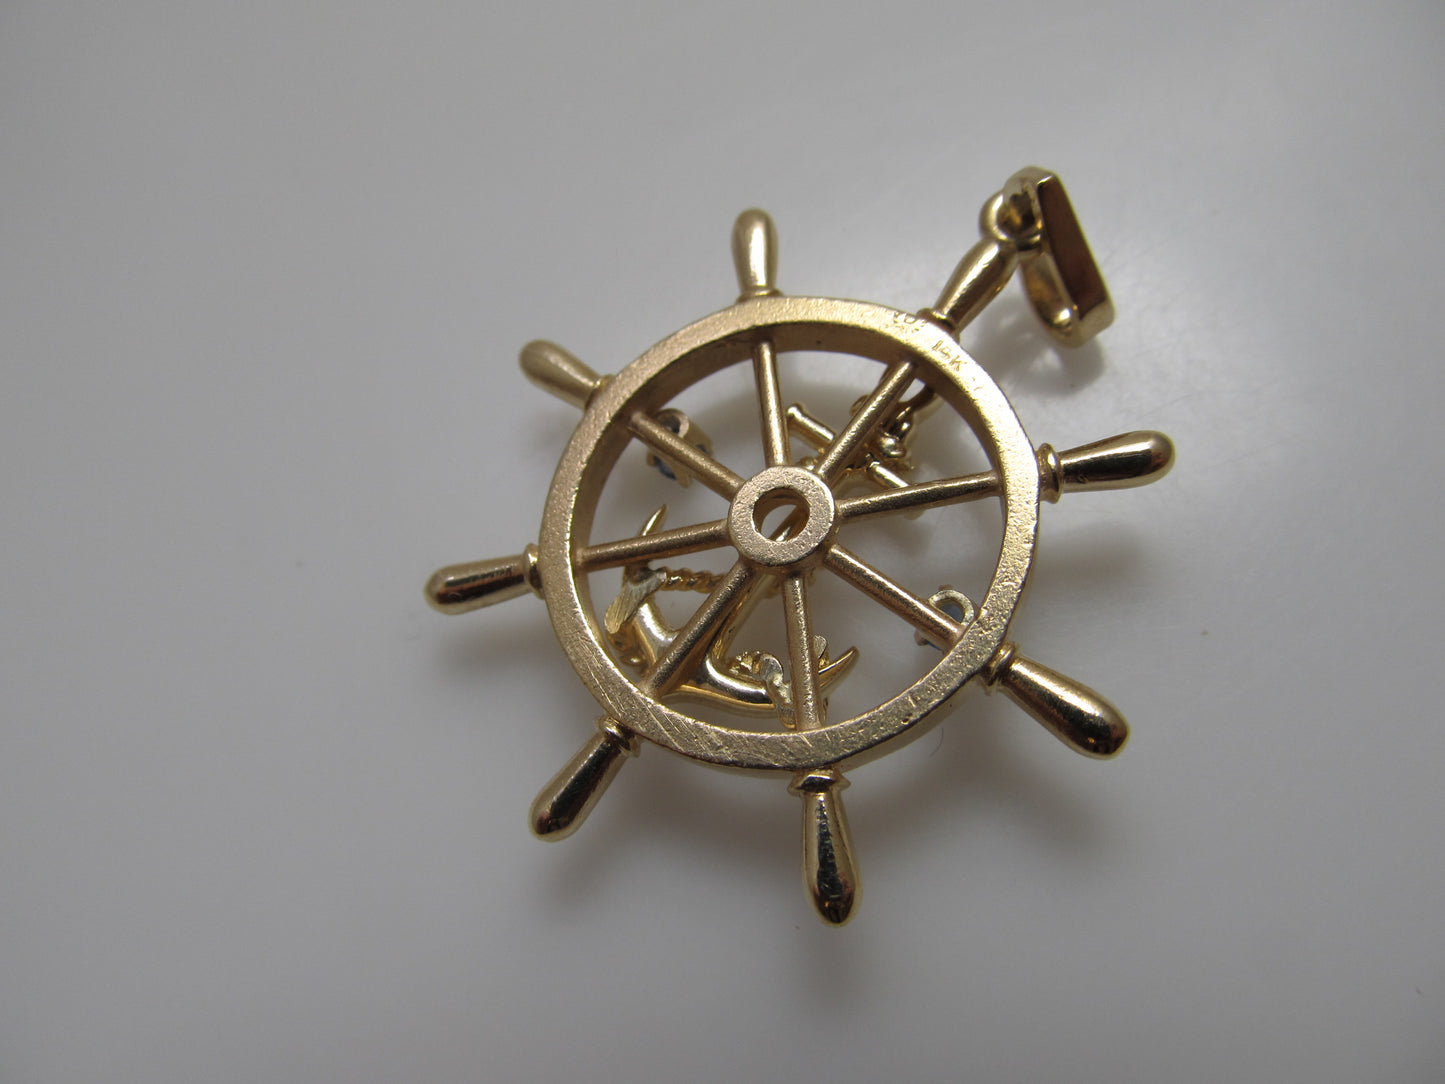 Ships wheel anchor pendant